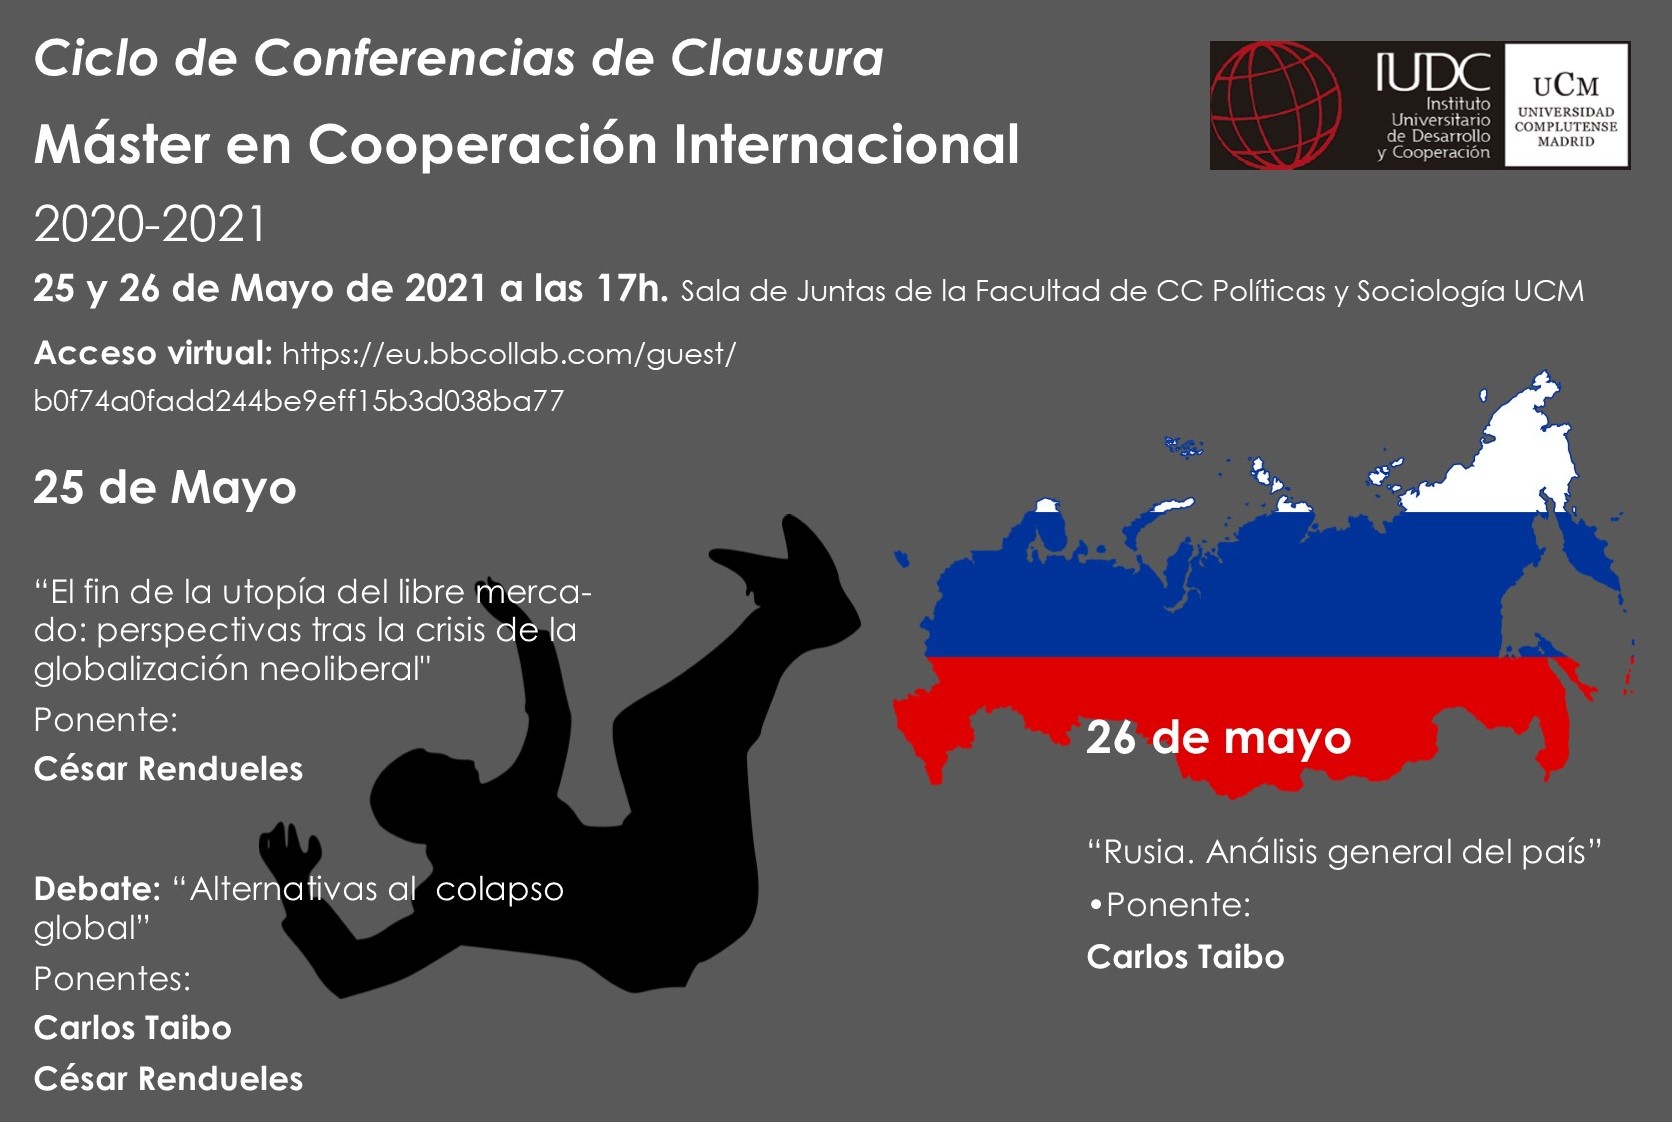 Ciclo de Conferencias de Clausura del Máster en Cooperación Internacional 2020-2021